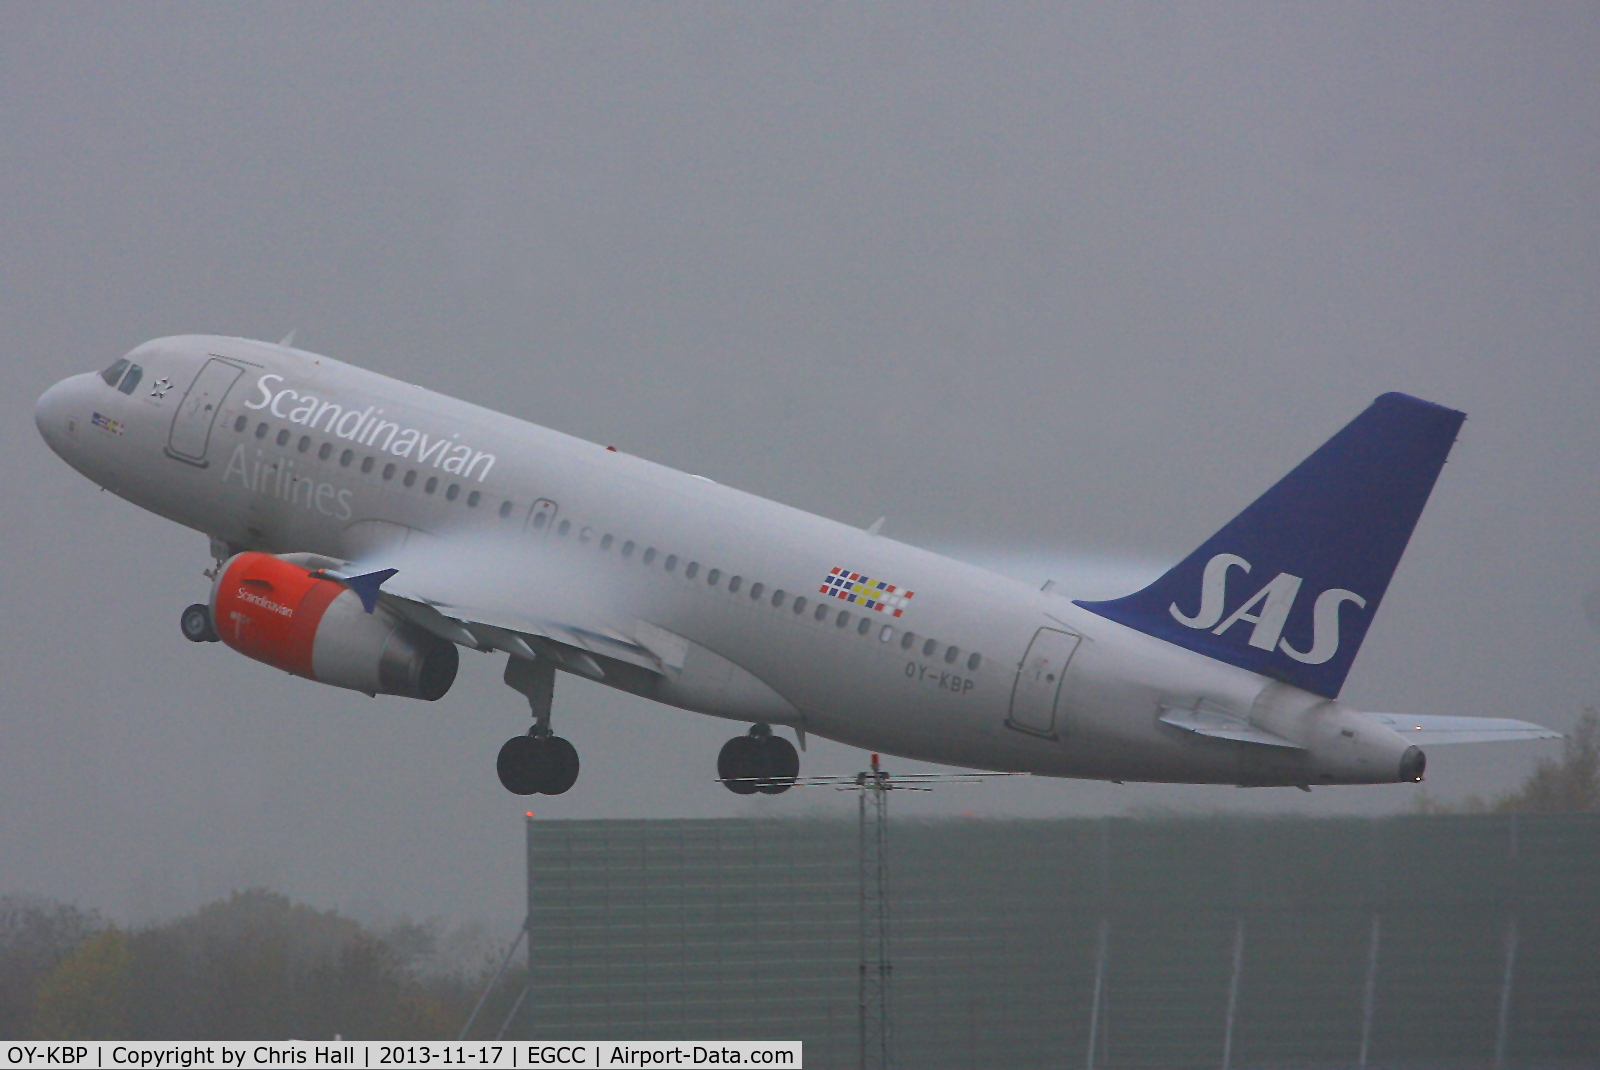 OY-KBP, 2006 Airbus A319-132 C/N 2888, SAS Scandinavian Airlines